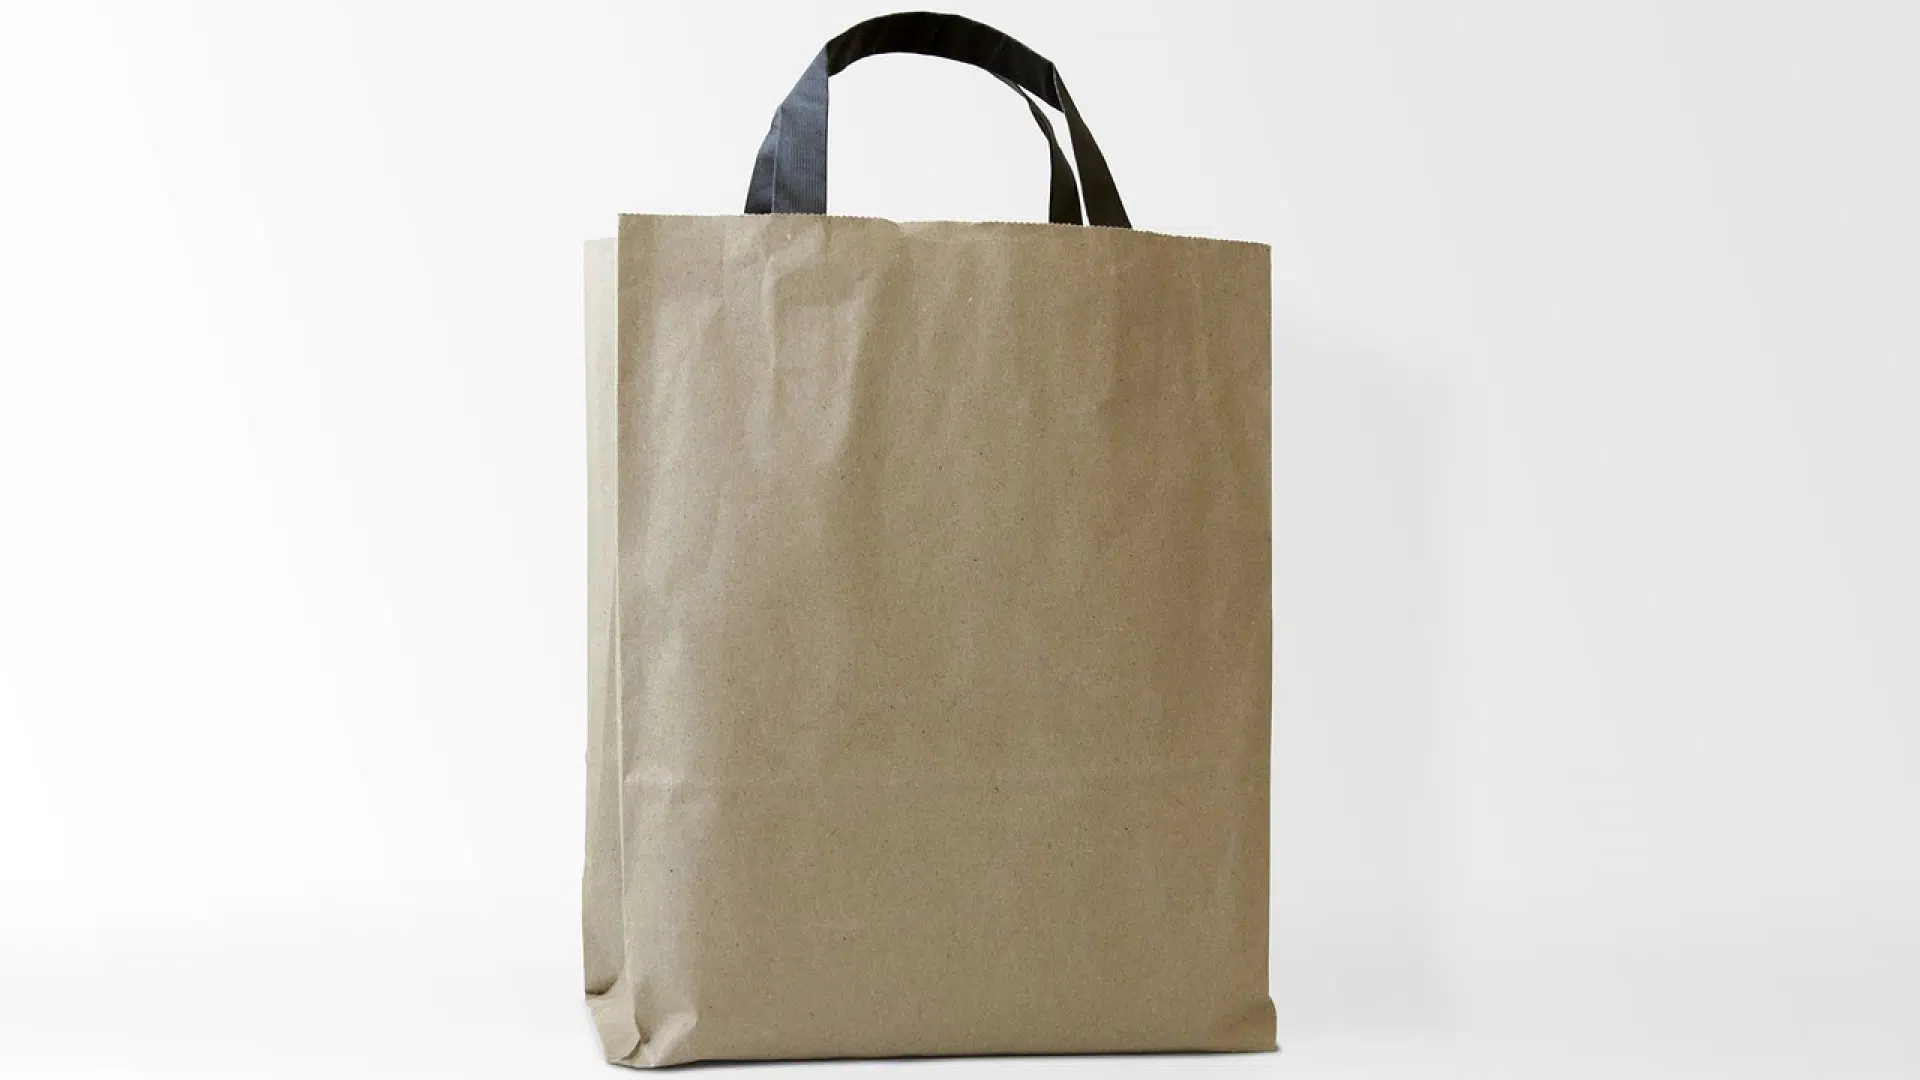 Le sac en papier kraft est-il robuste ?